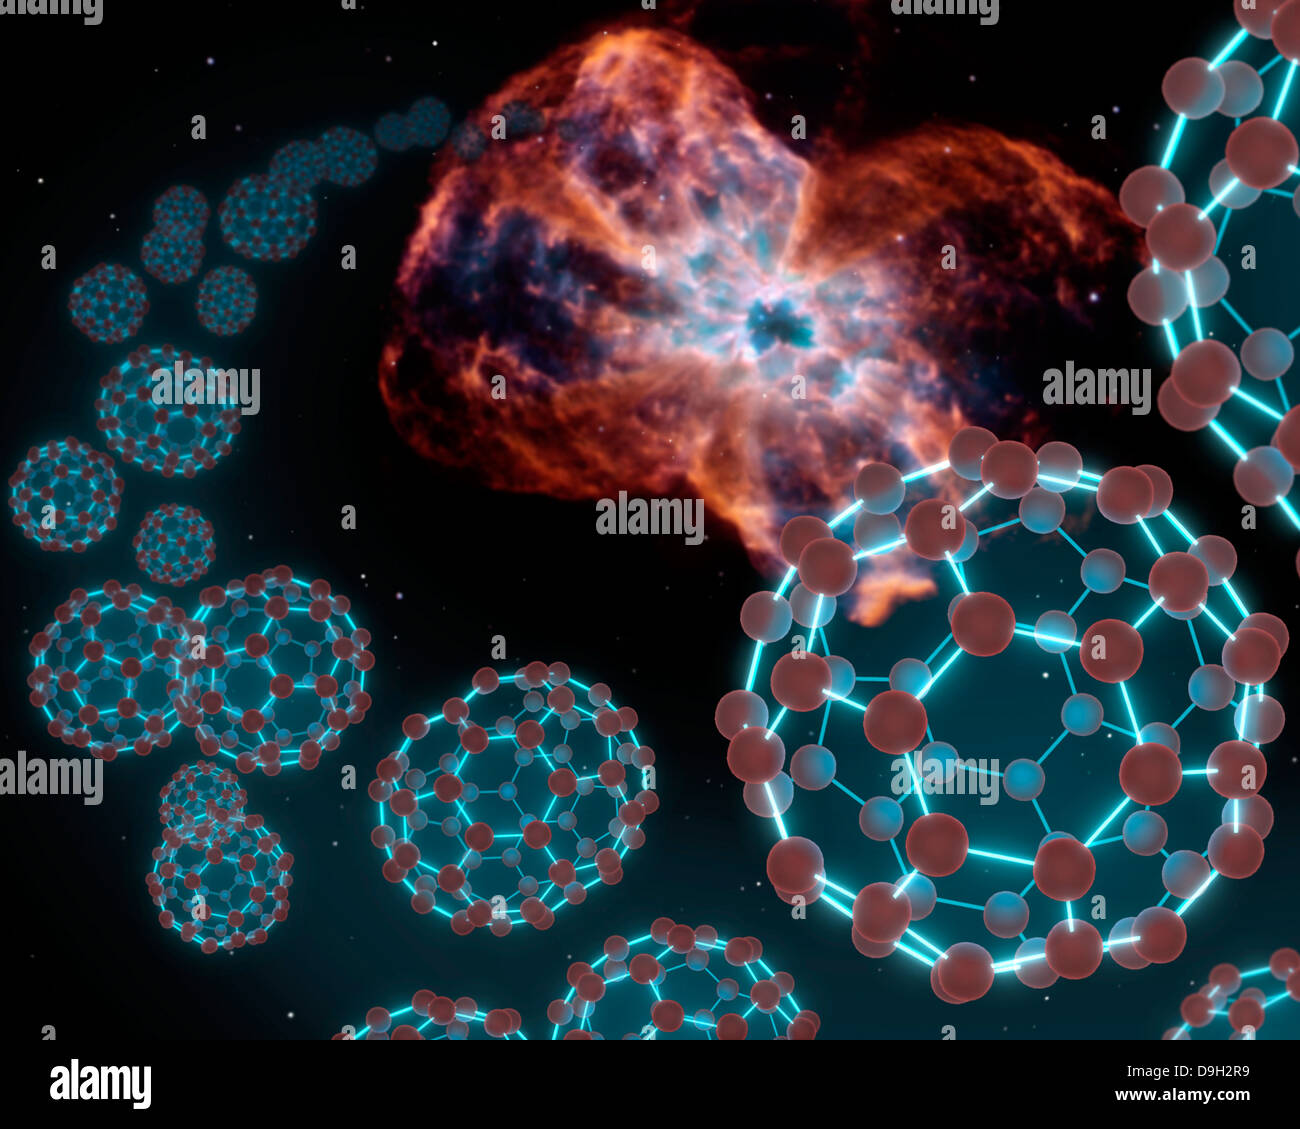 Concepto del artista mostrando bolas de carbono expulsar fuera de una estrella blanca de morir en una nebulosa planetaria. Foto de stock